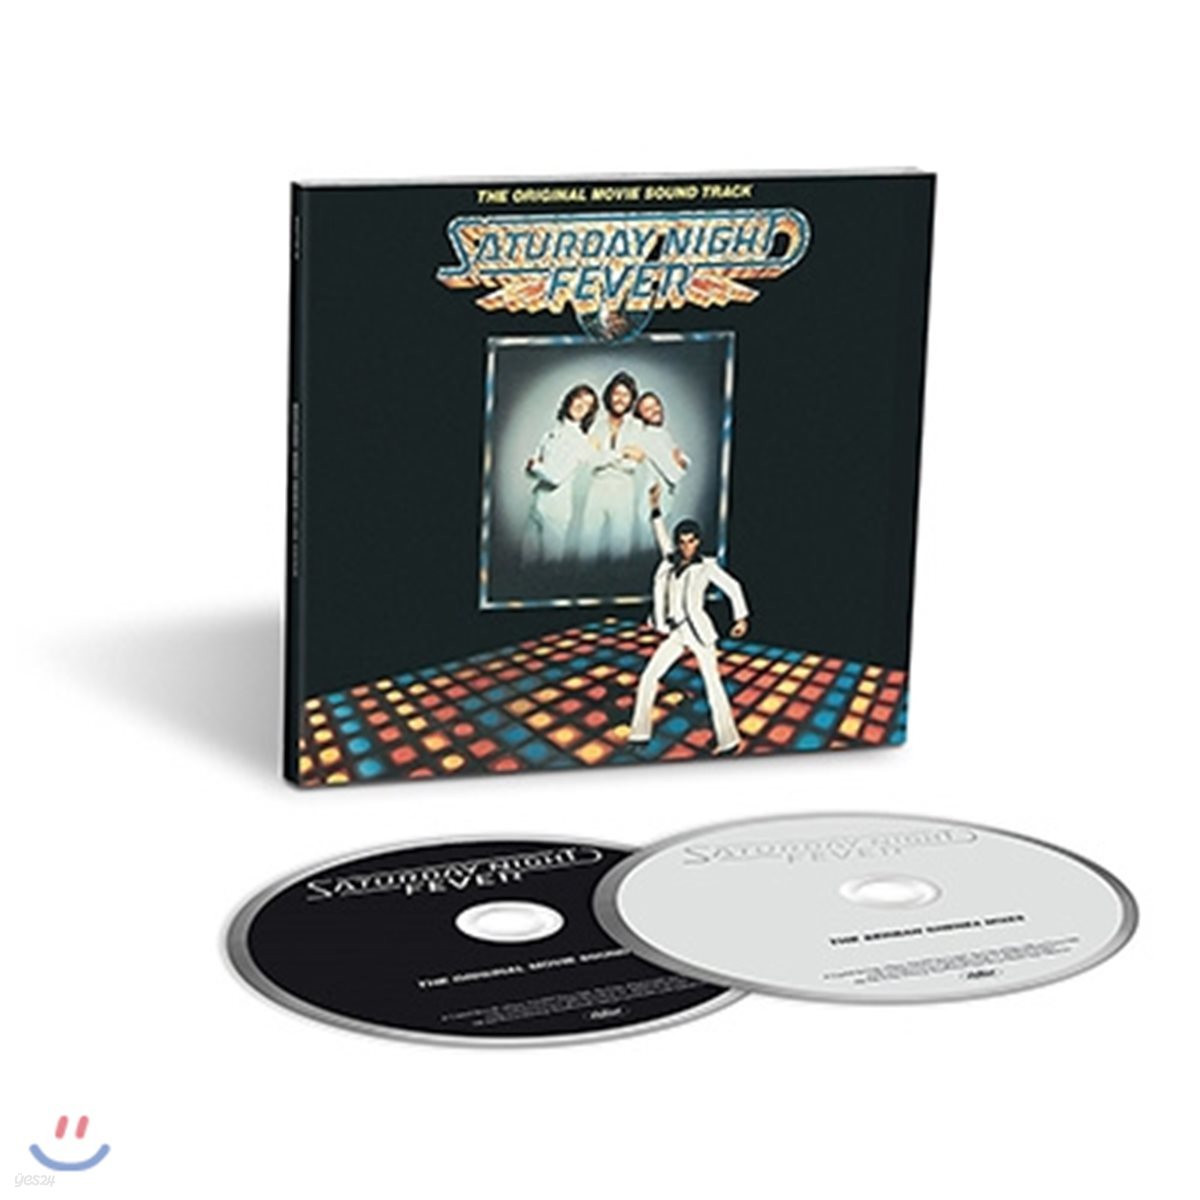 토요일밤의 열기 영화음악 (Saturday Night Fever OST) [40th Anniversary Deluxe Edition]